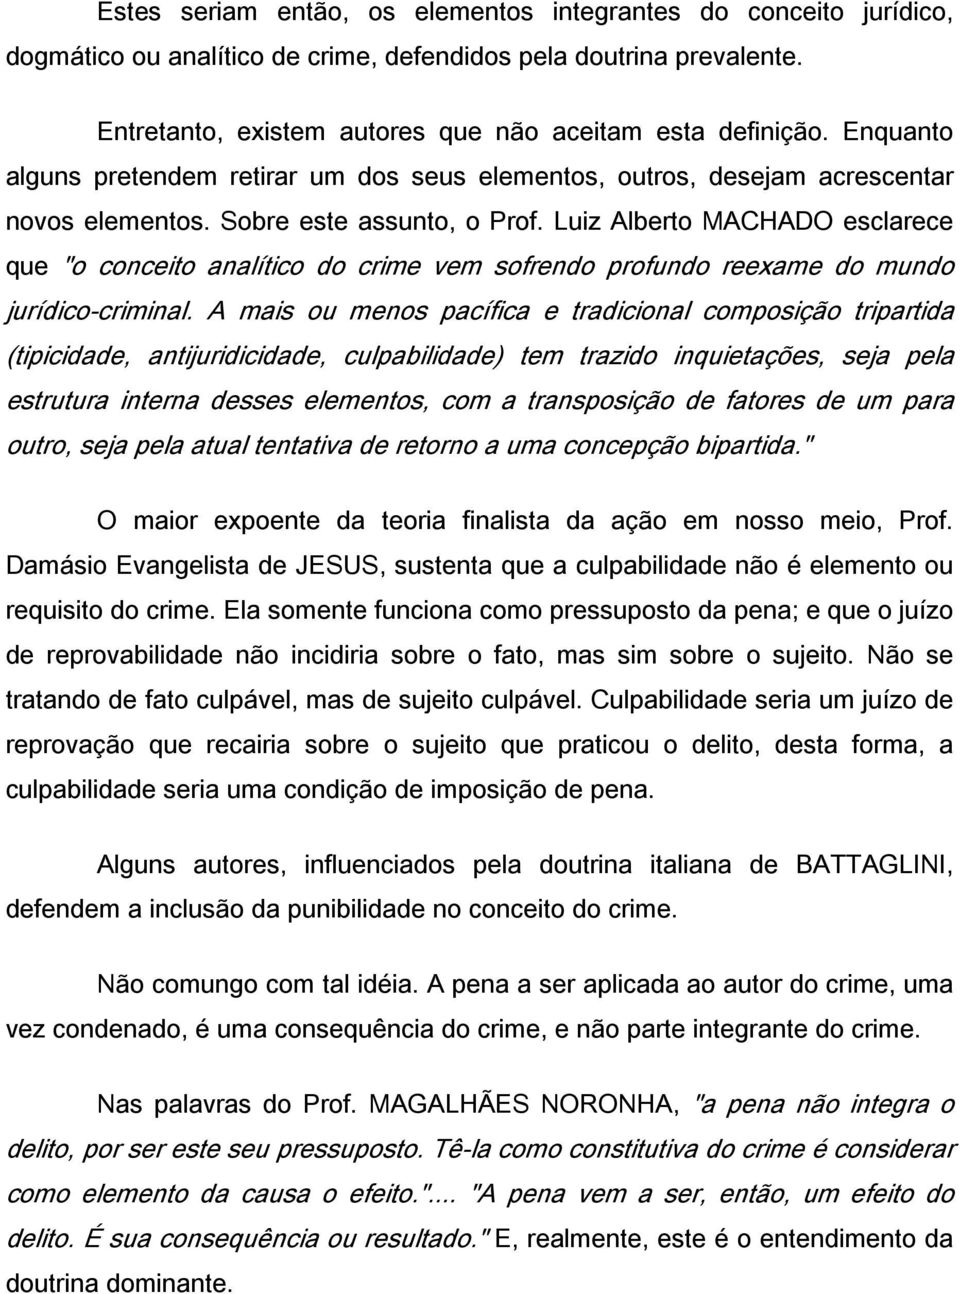 Luiz Alberto MACHADO esclarece que "o conceito analítico do crime vem sofrendo profundo reexame do mundo jurídico-criminal.